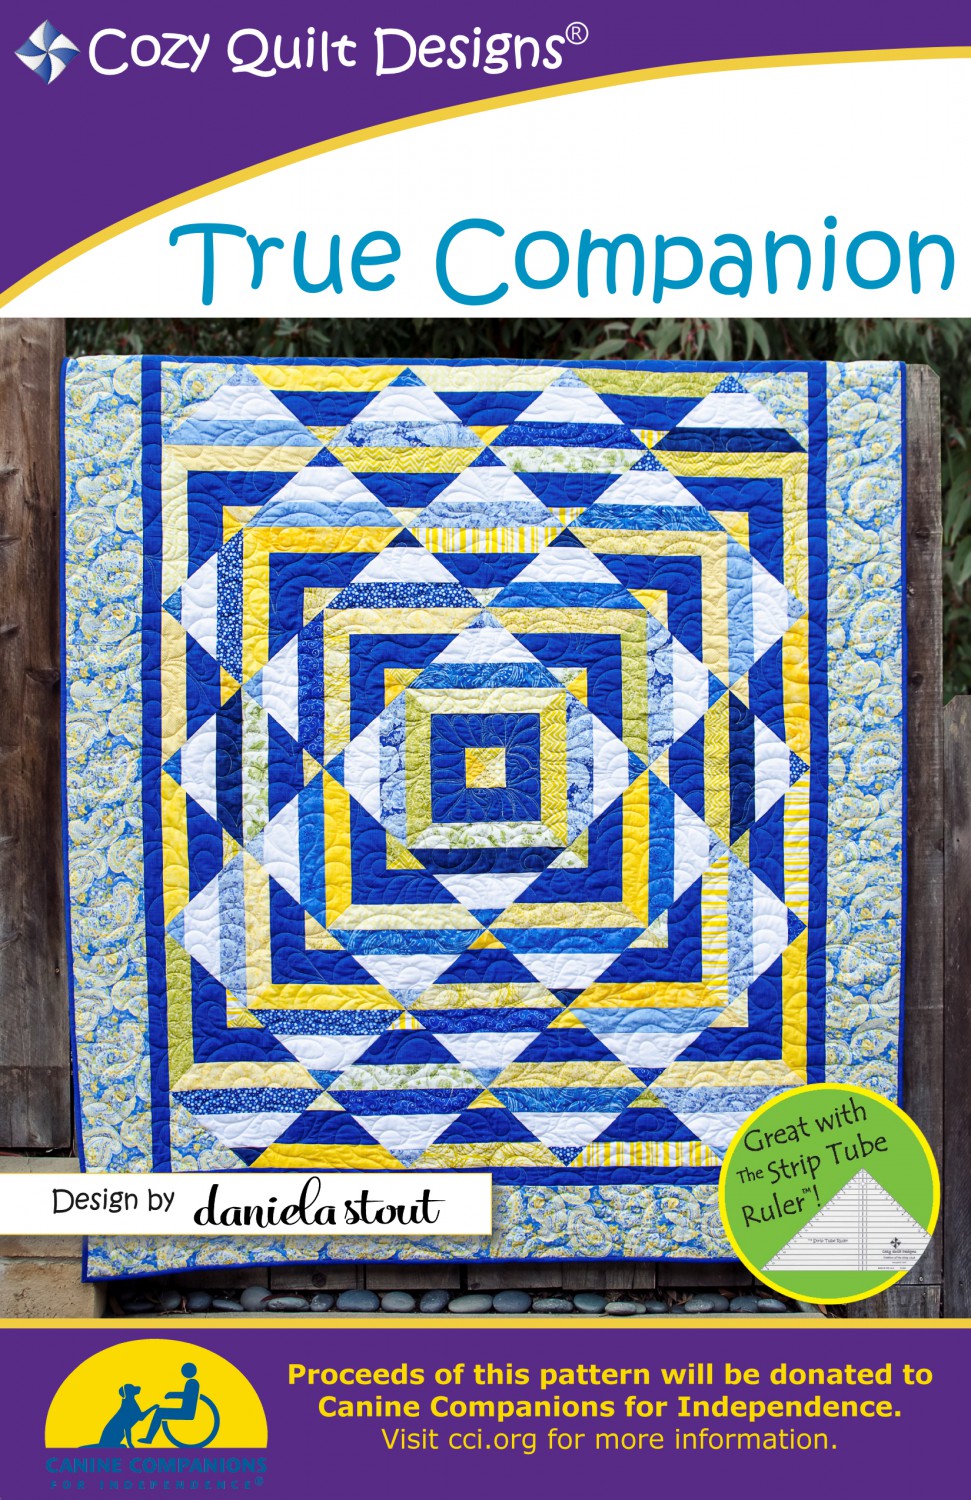 Cozy Quilt Designs 1 Companion Quilt Pattern